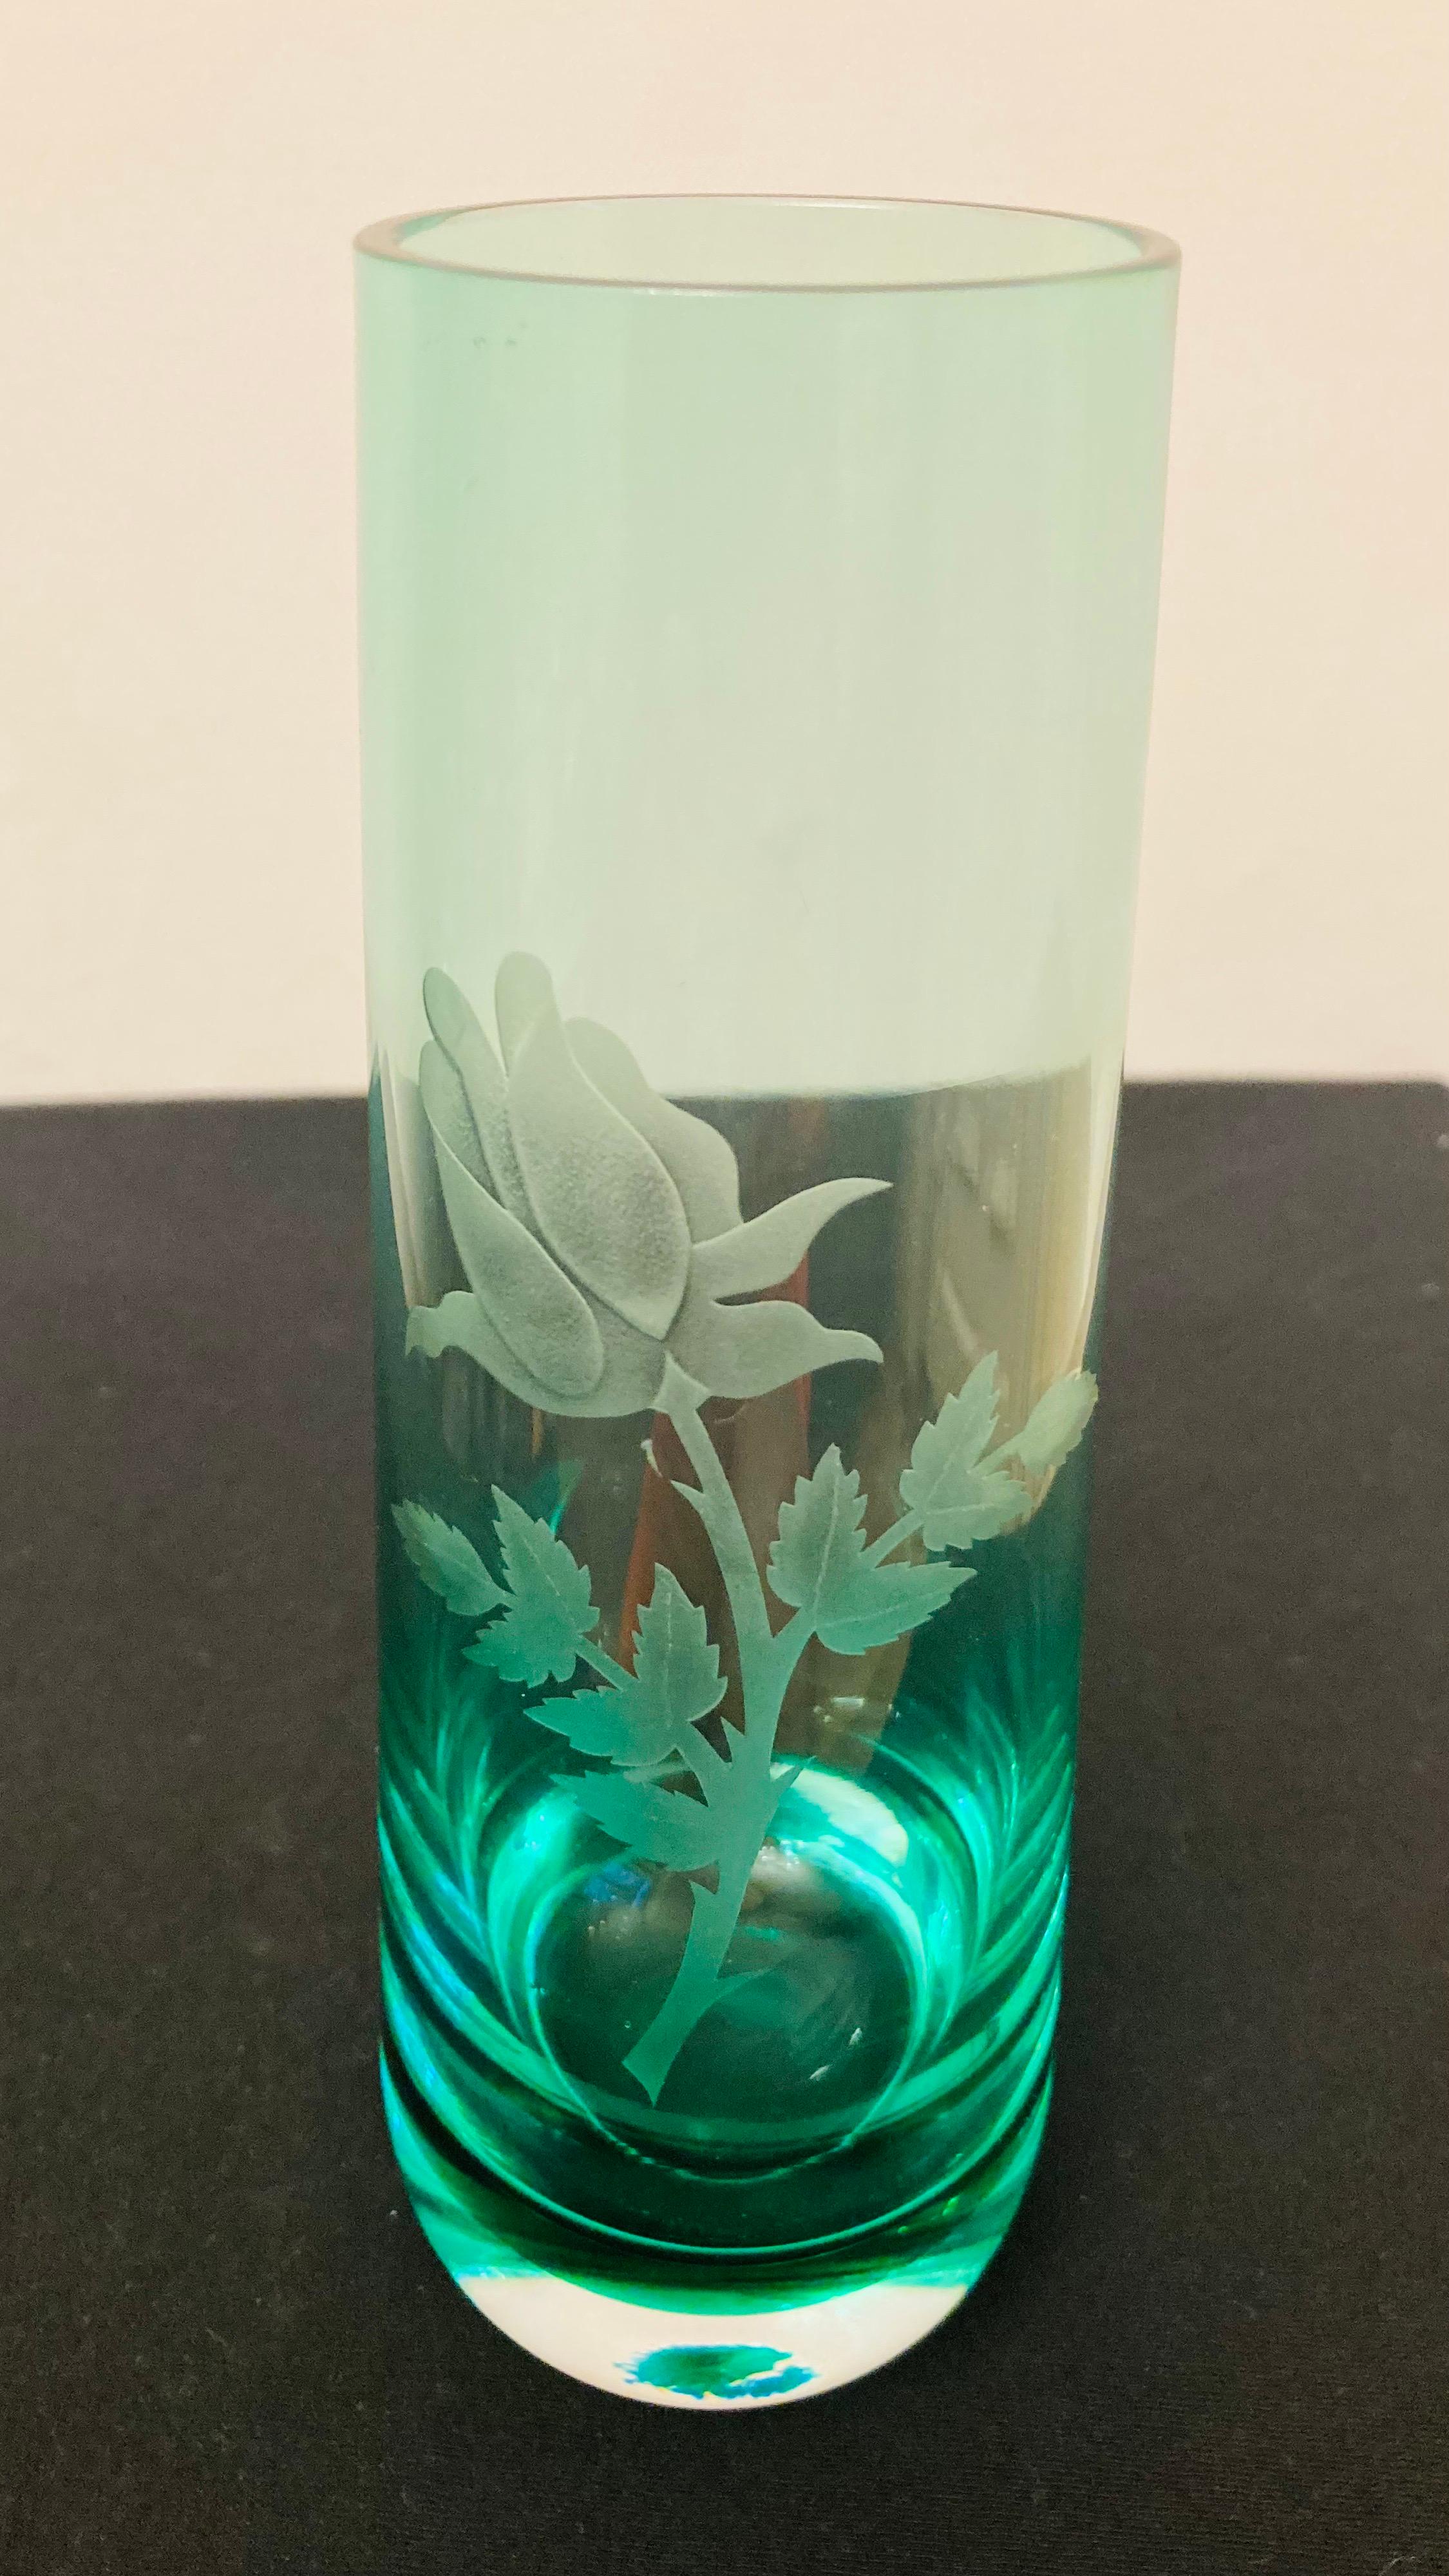 Vitange Caithness Glass Sommerso Engraved Bud Vases For Sale 2